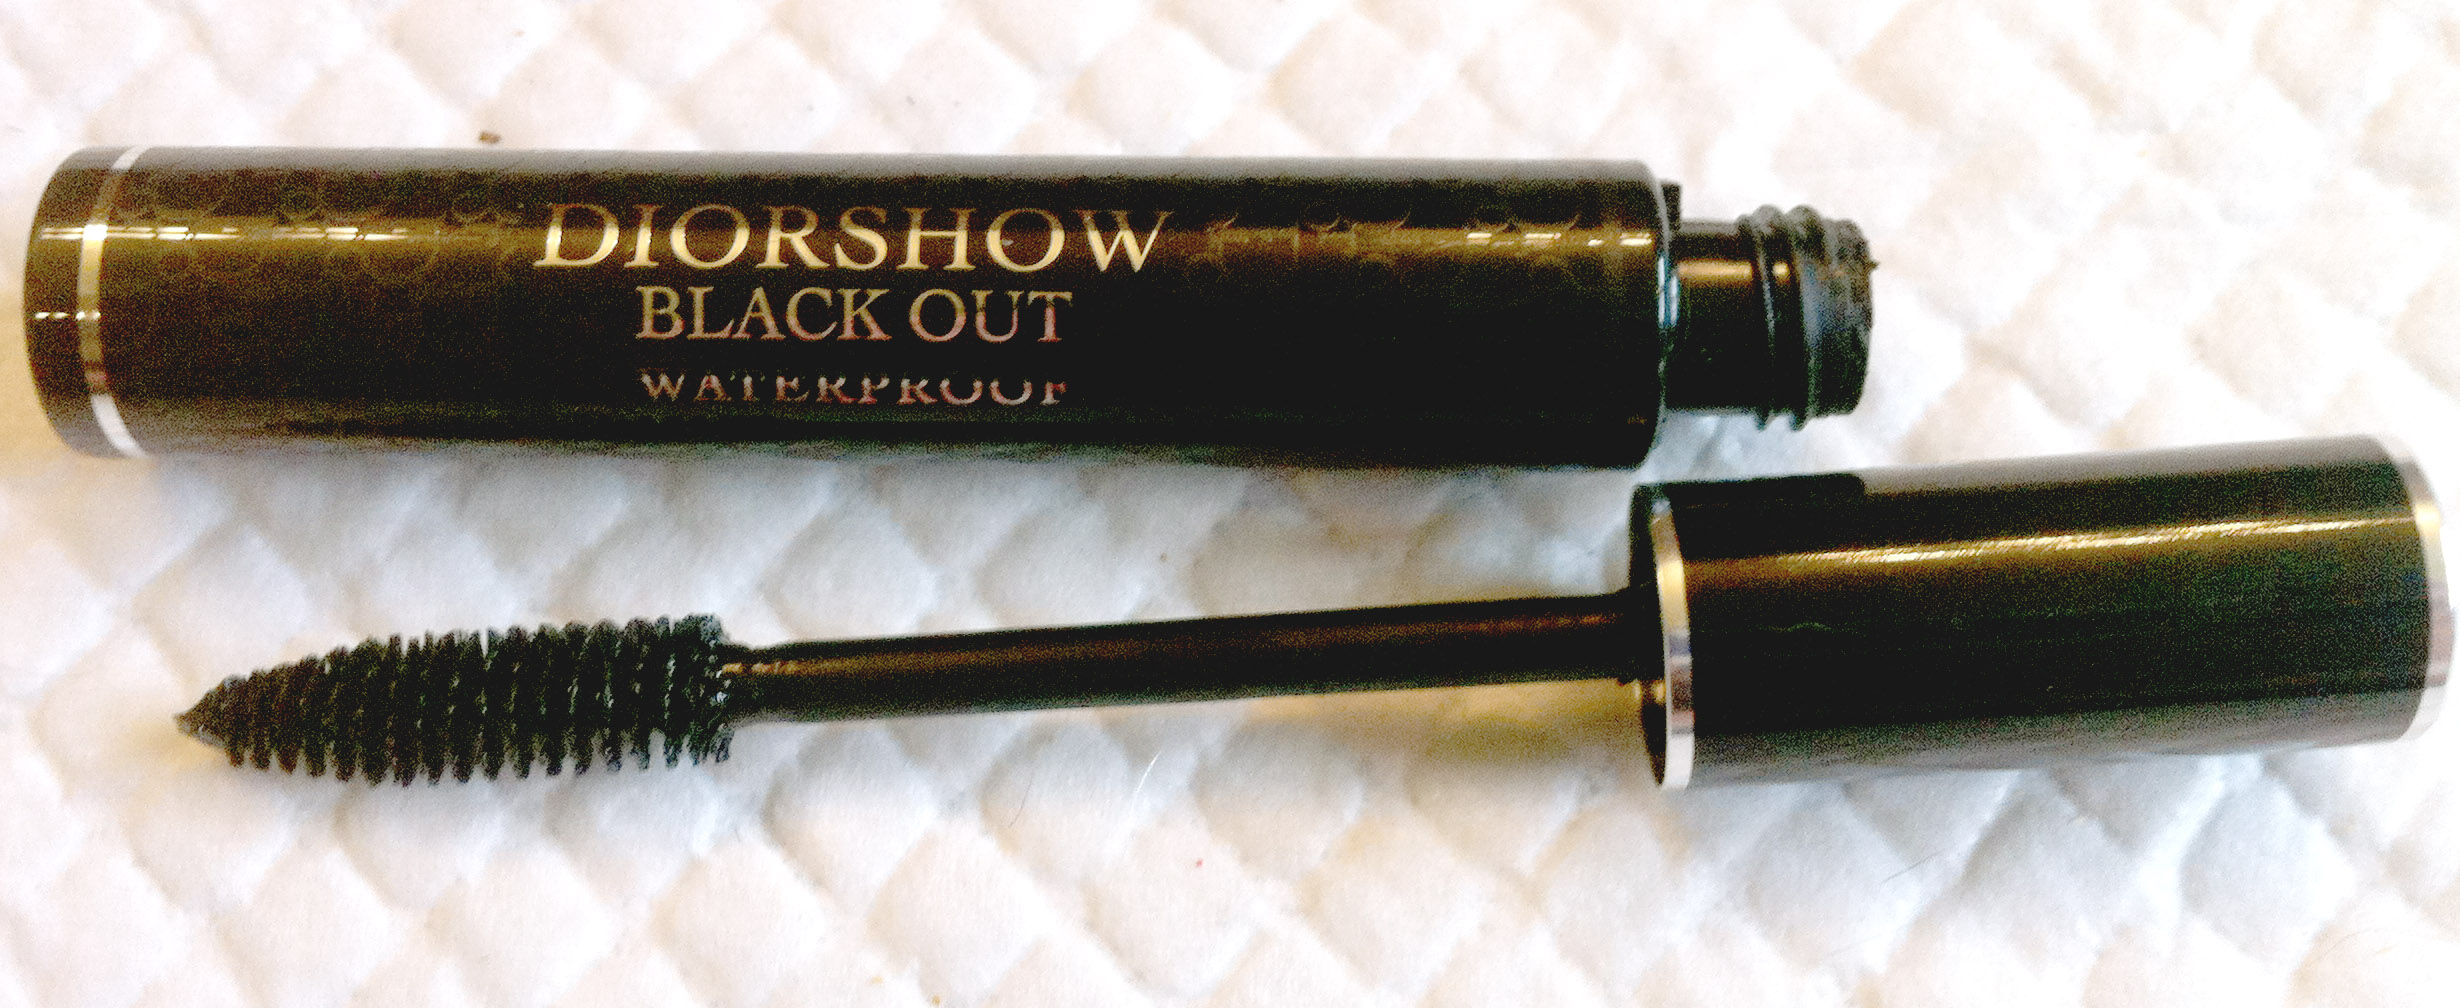 diorshow blackout waterproof mascara